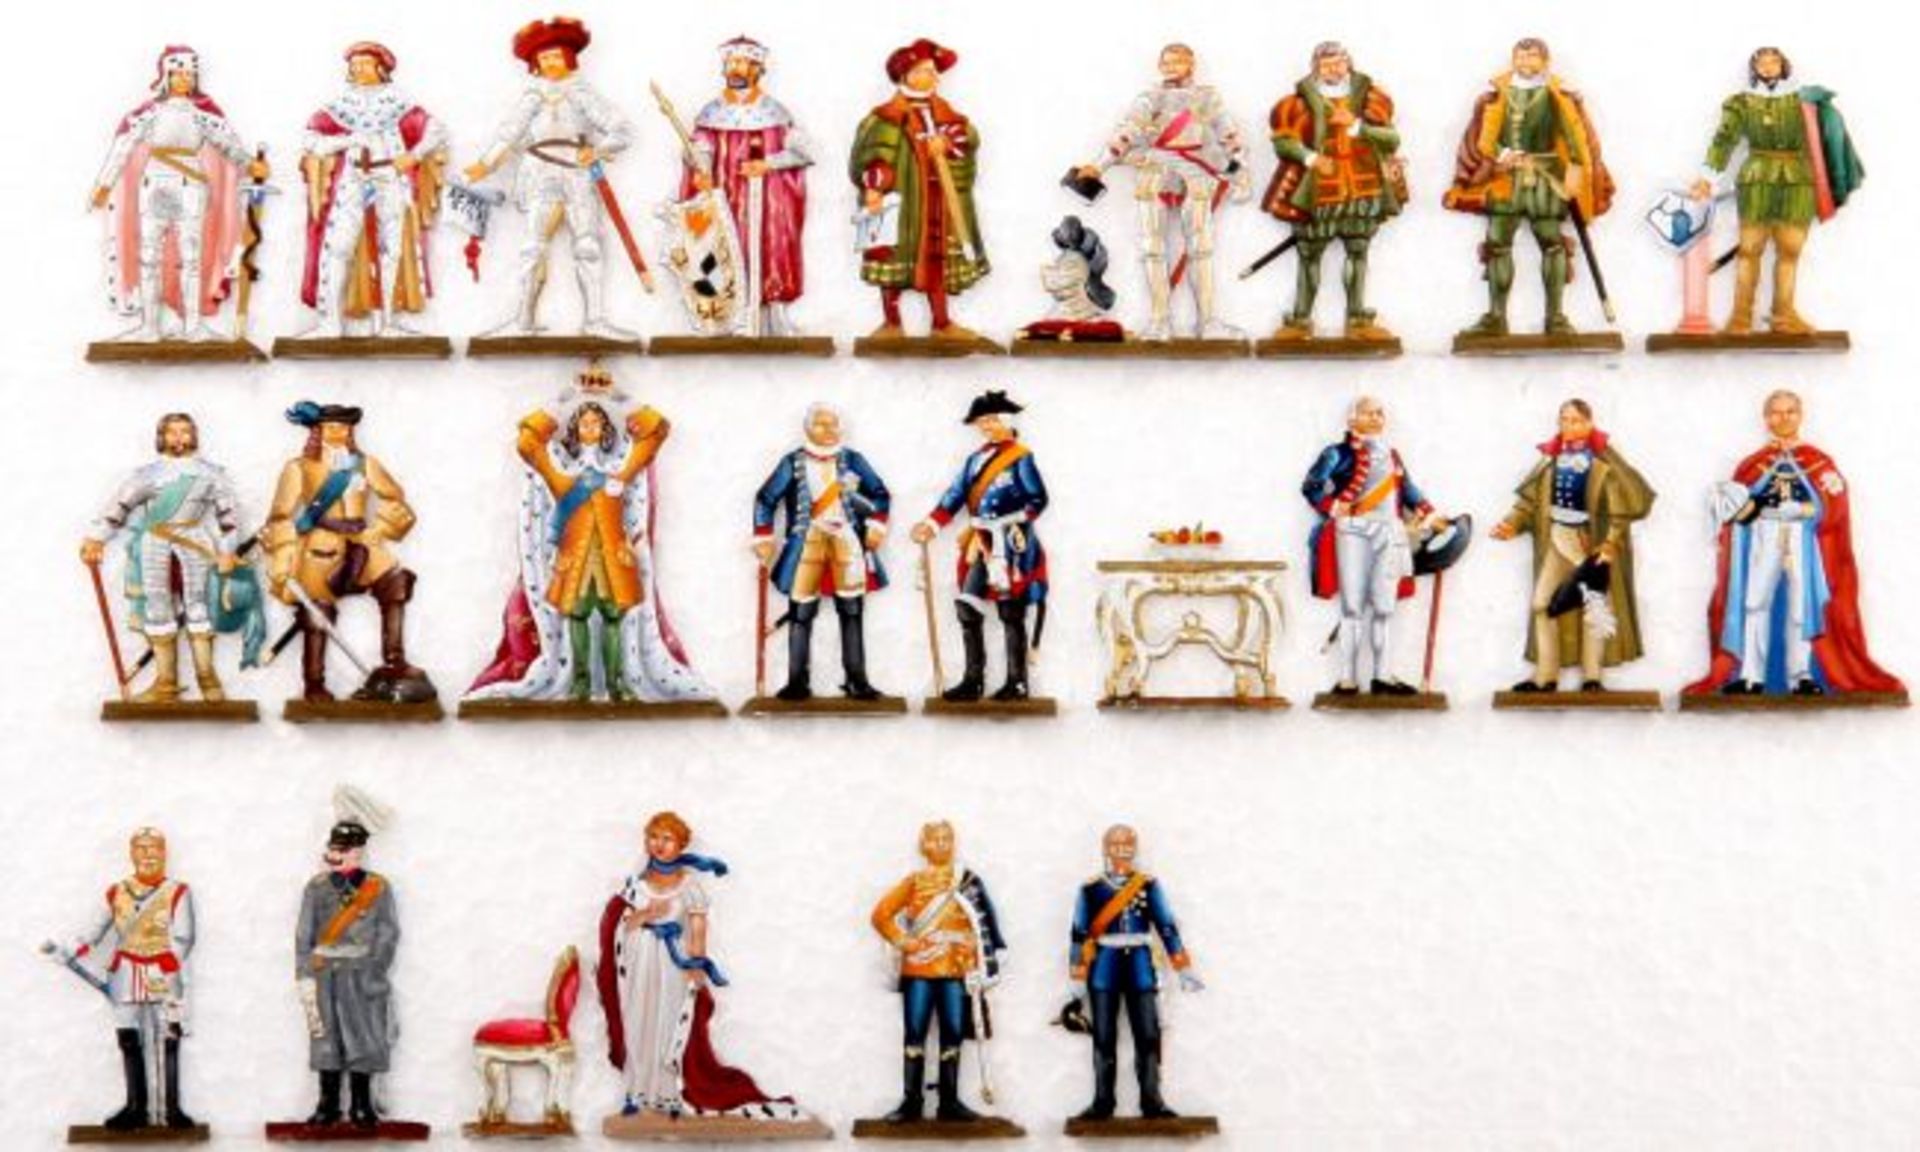 Brandenburg-Preußische Herrscher 1415-1918, komplette Scholtz-Serie, durch wenige Bunzel-Figuren